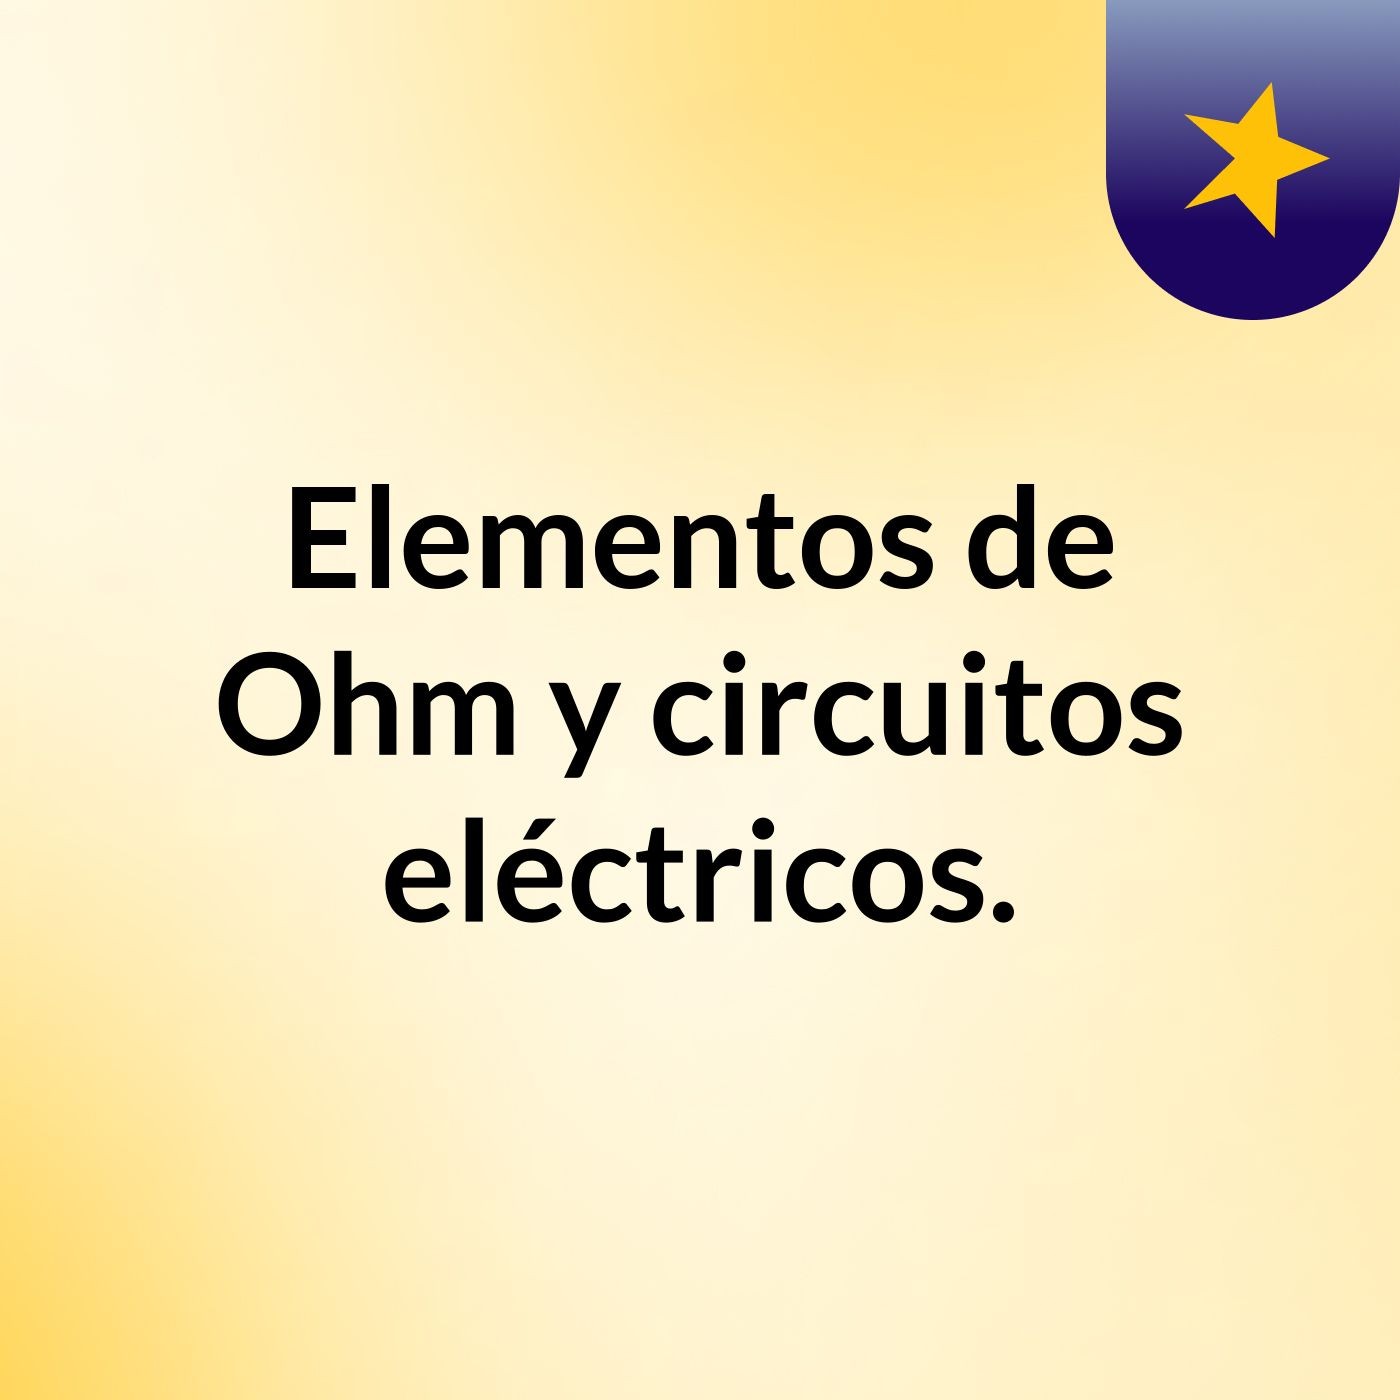 Elementos de la Ley de Ohm y circuitos eléctricos